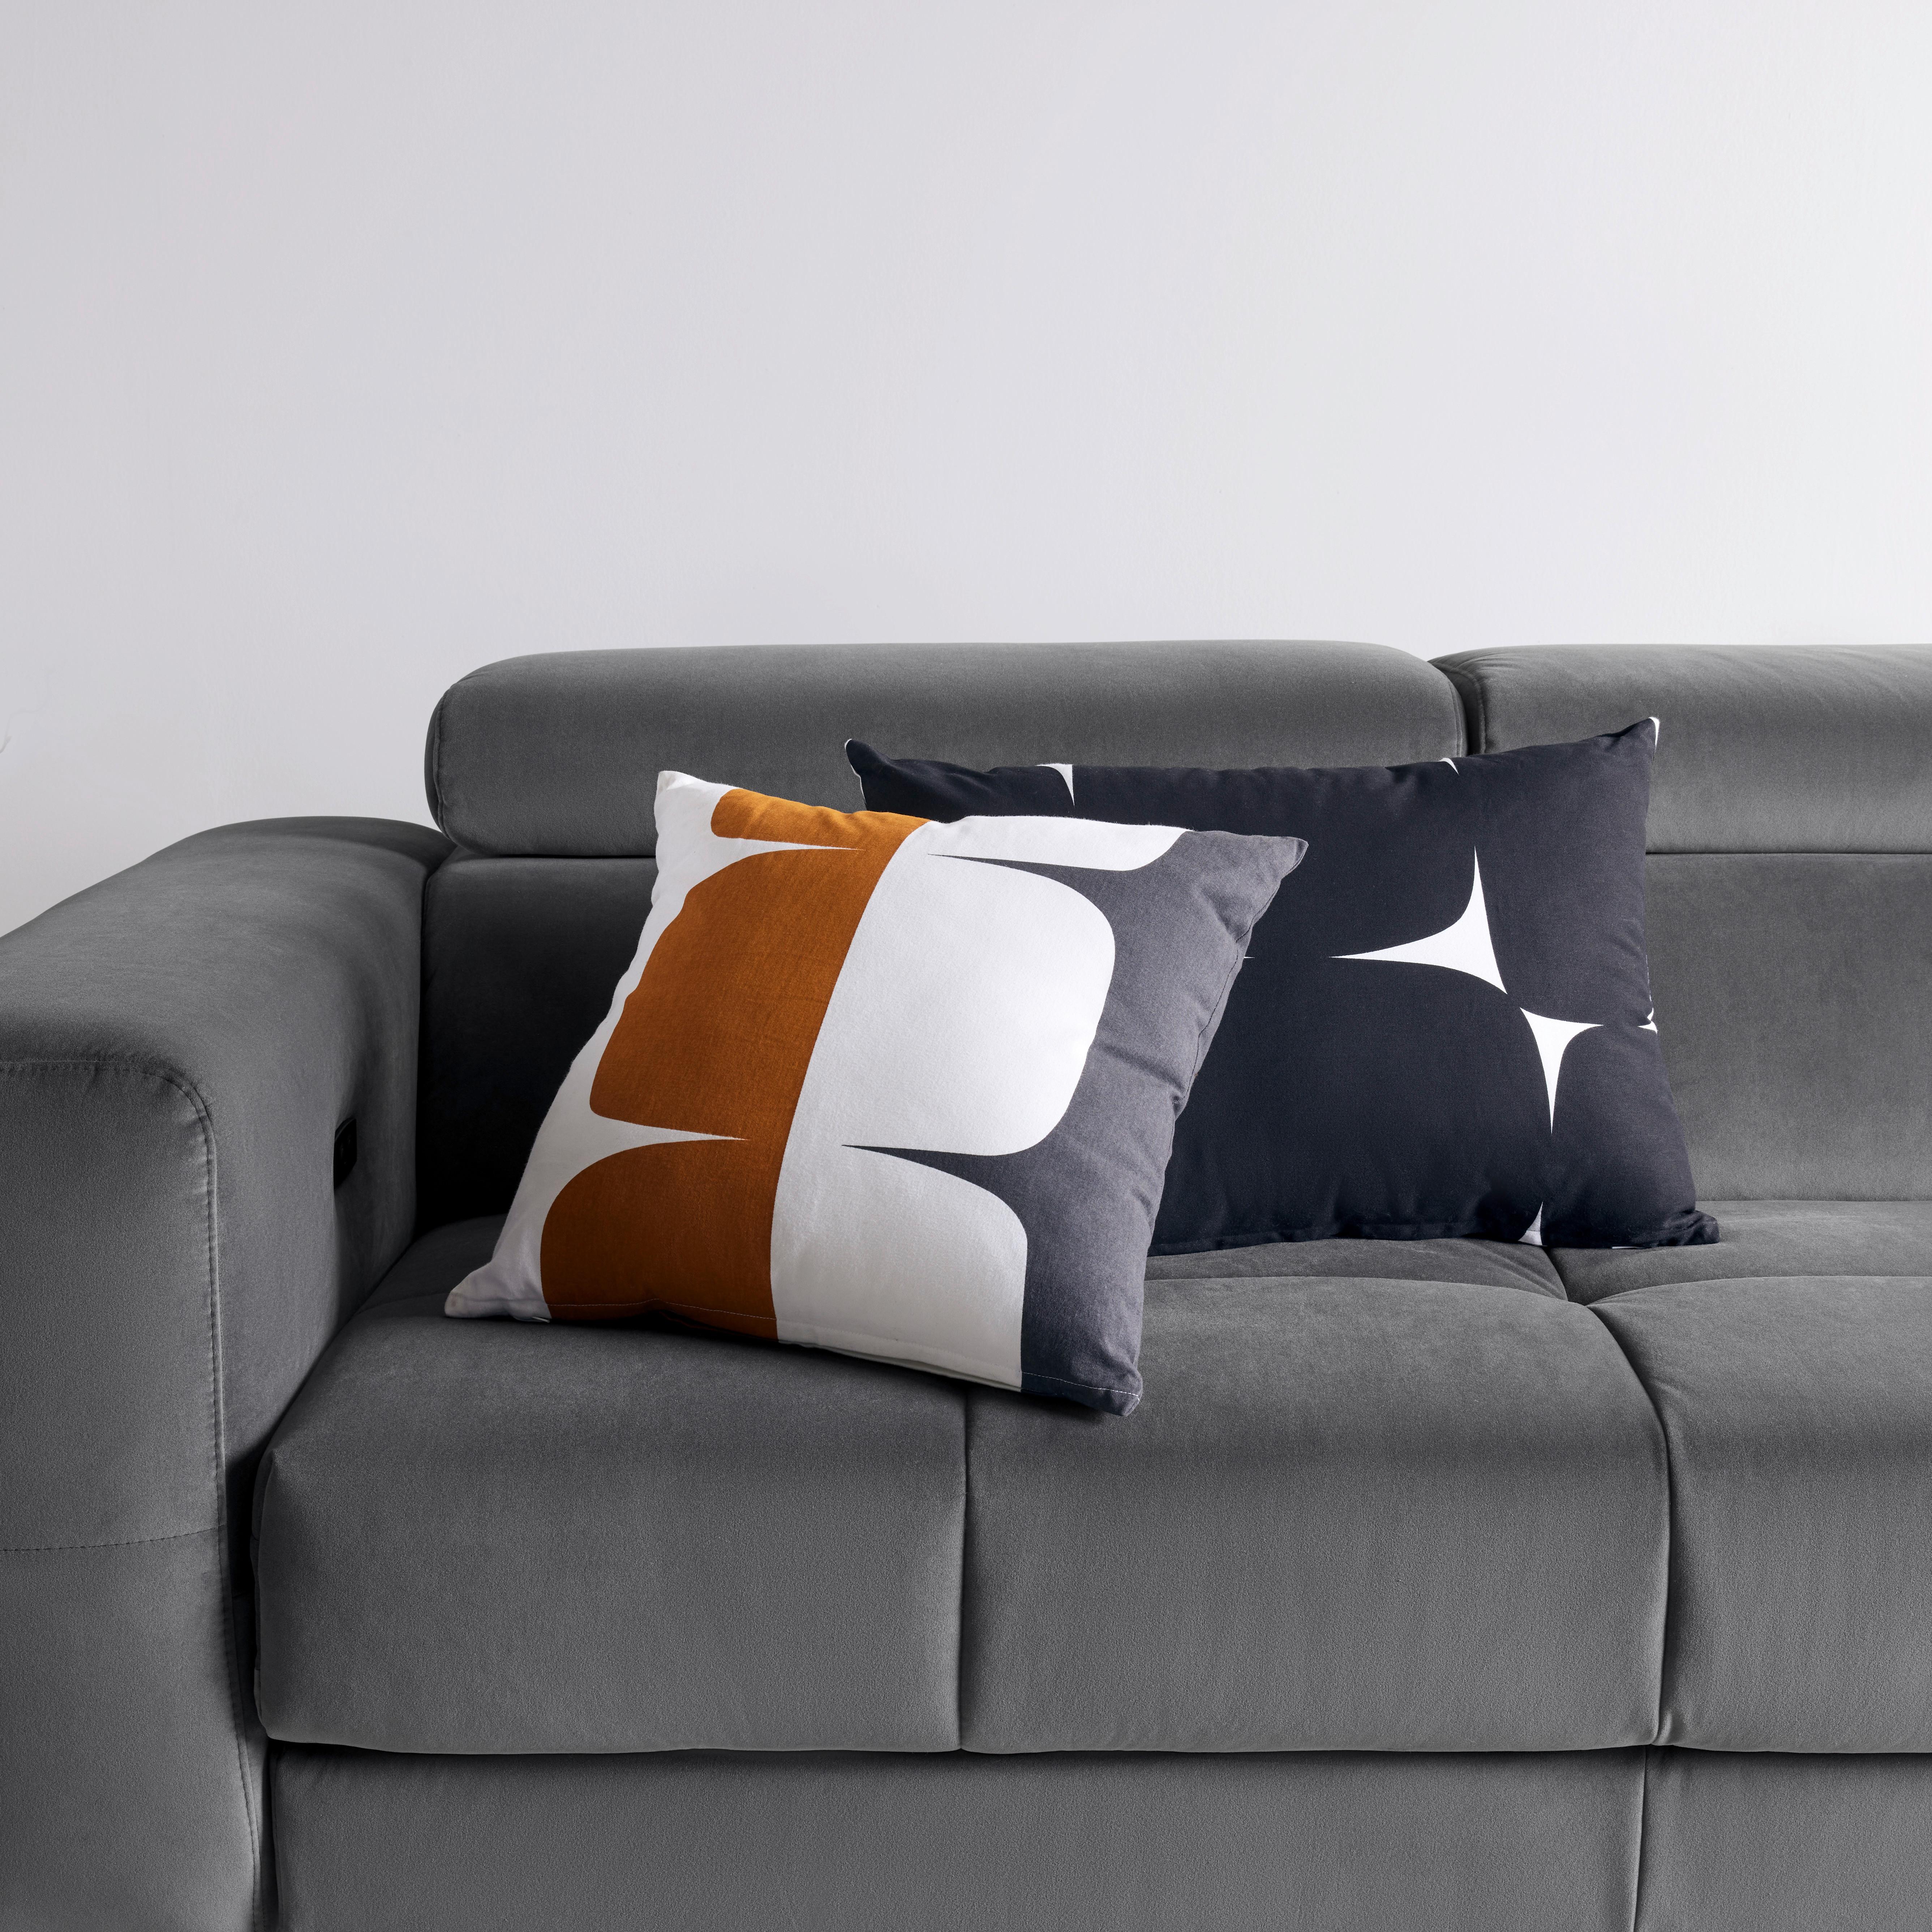 Dekorační Polštář Pebble, 45/45cm - bílá/černá, Moderní, textil (45/45cm) - Modern Living